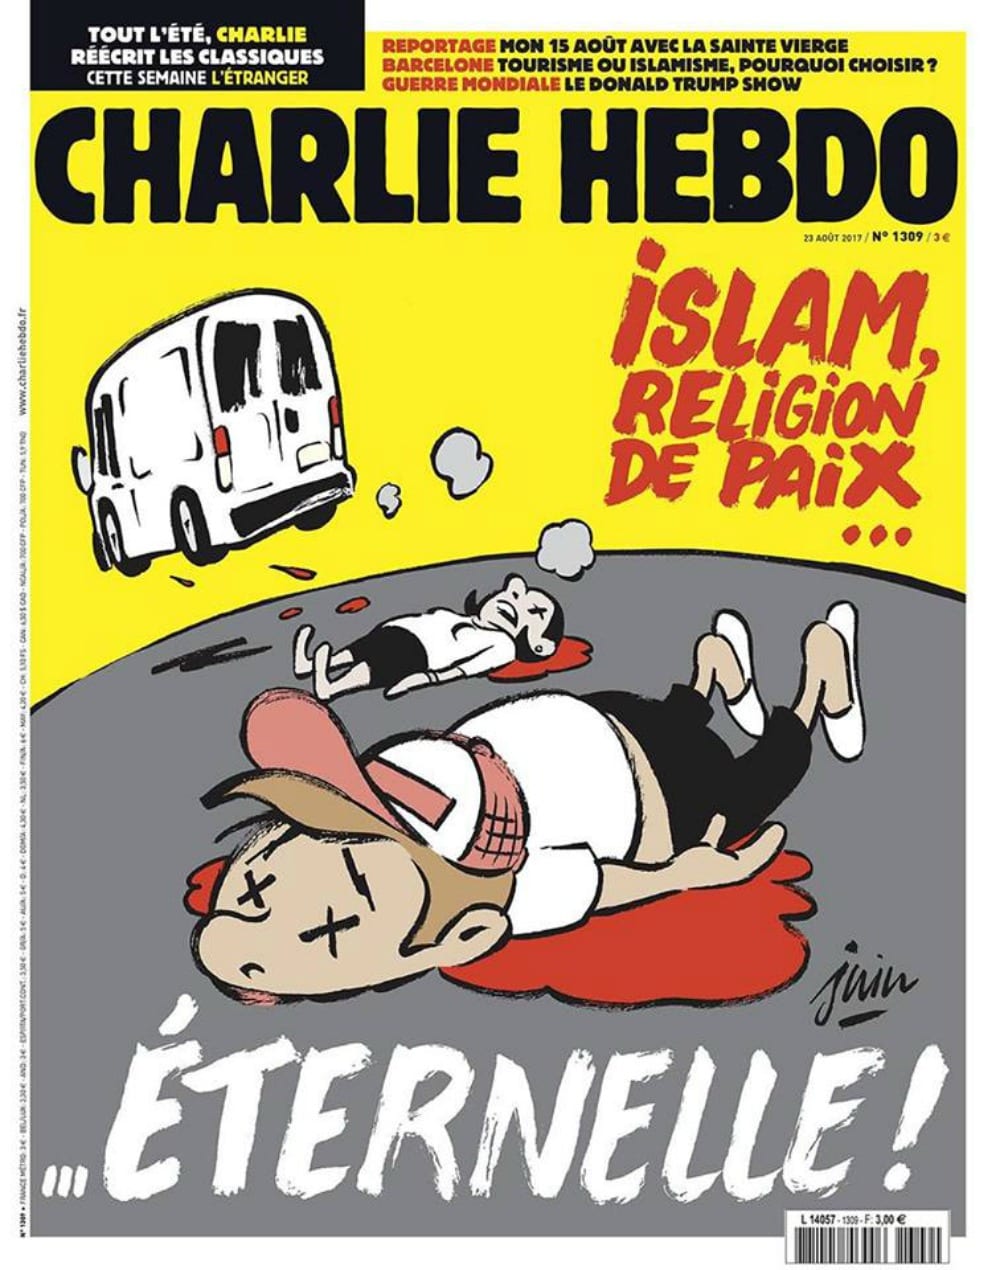 Charlie Hebdo: copertina shock sull'attentato di Barcellona, polemica mondiale